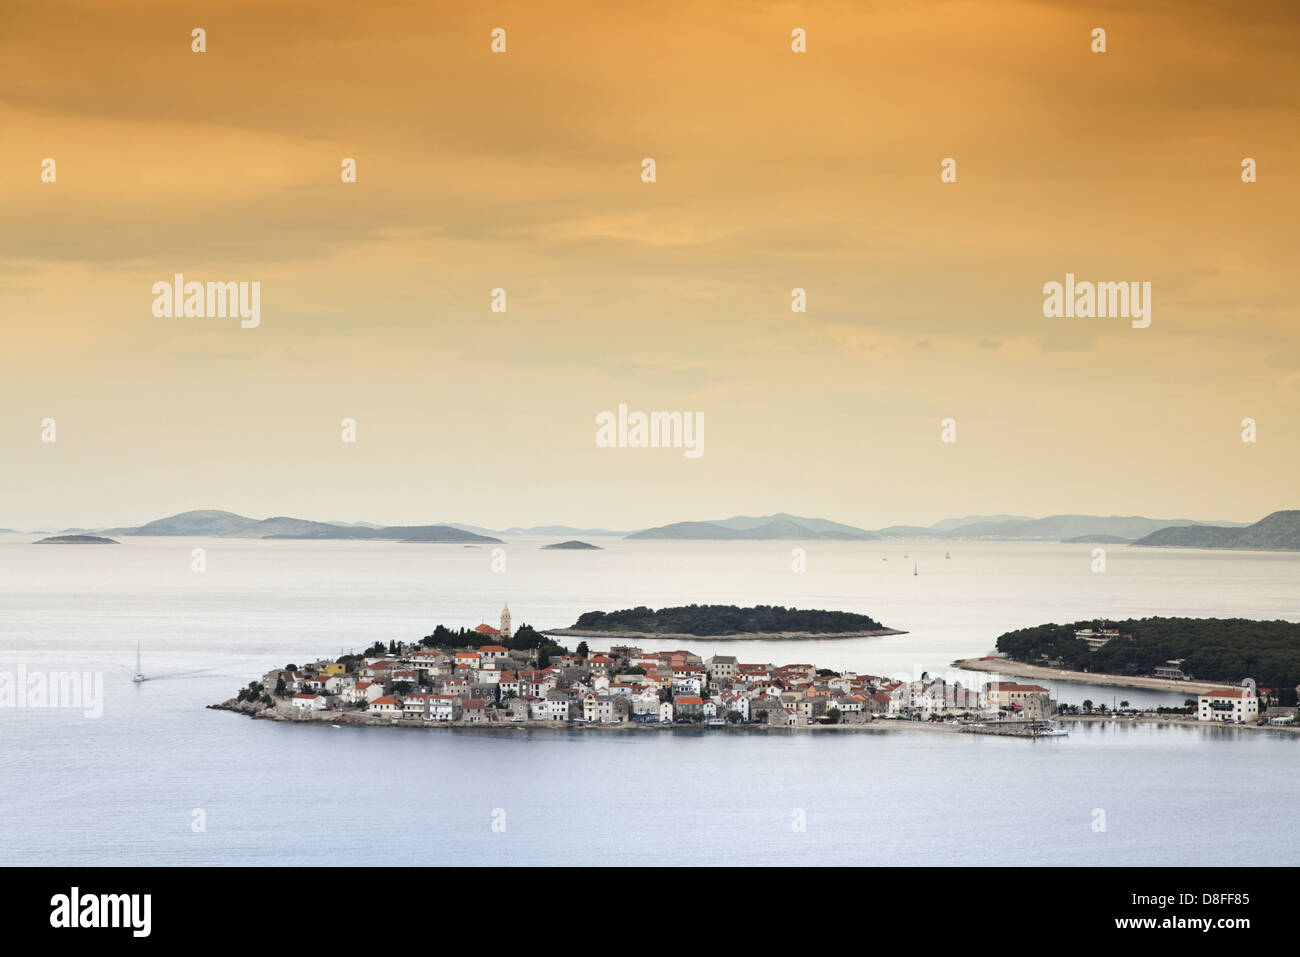 Croatia, Dalmatia, Primosten, city, houses, viewpoint, Kroatien, Dalmatien, Primosten; Stadt, Häuser, Ausichtsspunkt Stock Photo